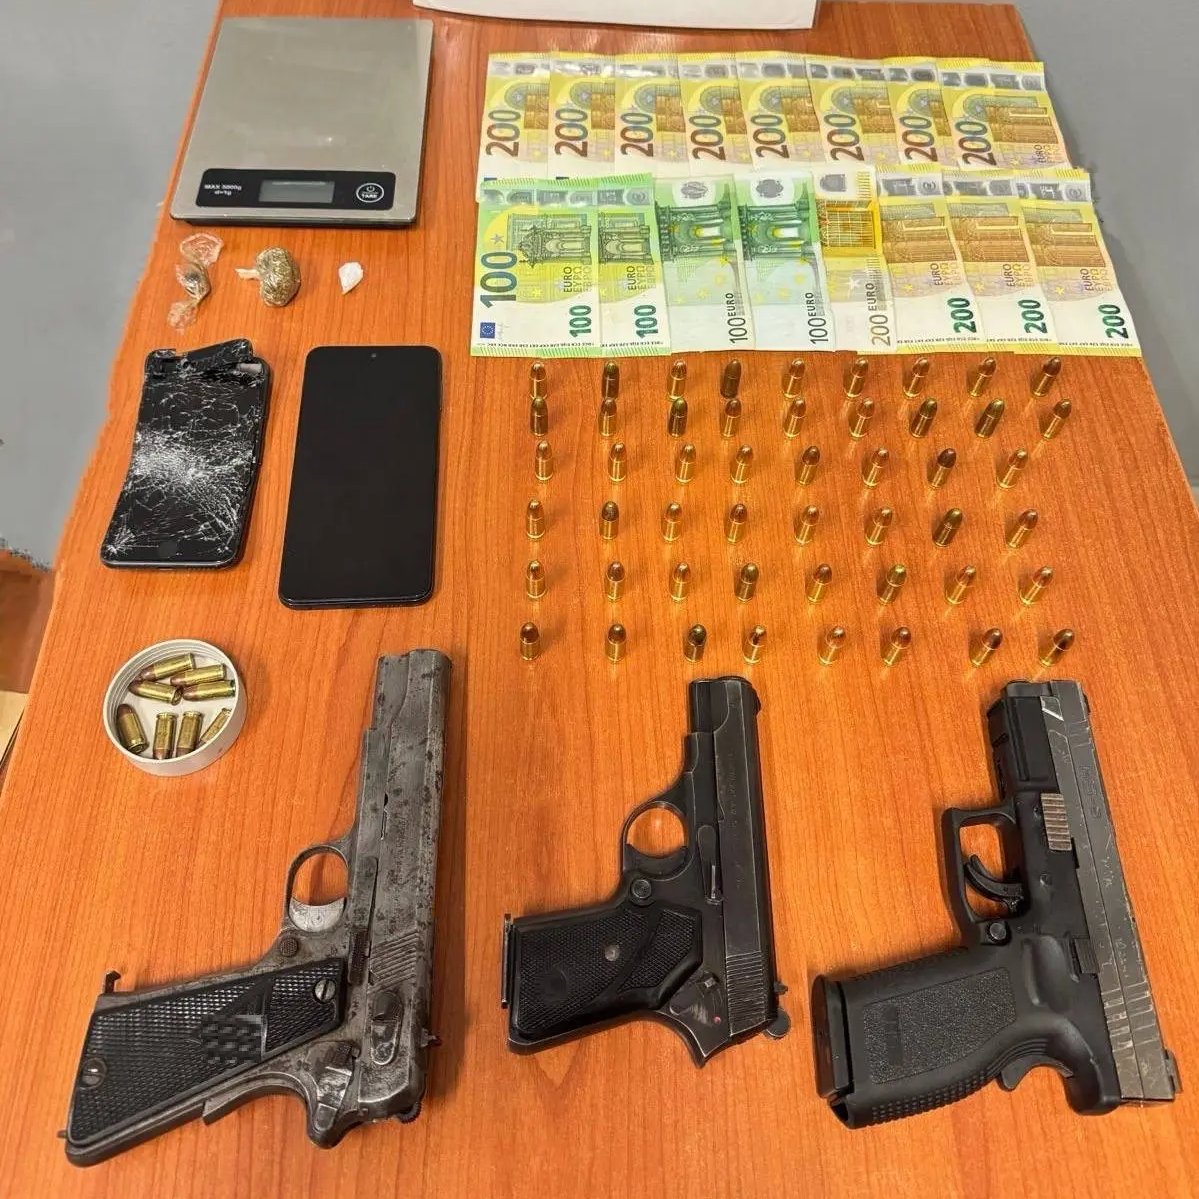 🔗 Συνελήφθη ένα άτομο στη #Χαλκιδική για παράνομη οπλοκατοχή και διακίνηση ναρκωτικών ουσιών. Στην οικία του εντοπίστηκαν μεταξύ άλλων: ▪️ 3 πιστόλια, ▪️ 58 φυσίγγια και ▪️ ποσότητες κοκαΐνης και κάνναβης 👉 rb.gy/lo7dol